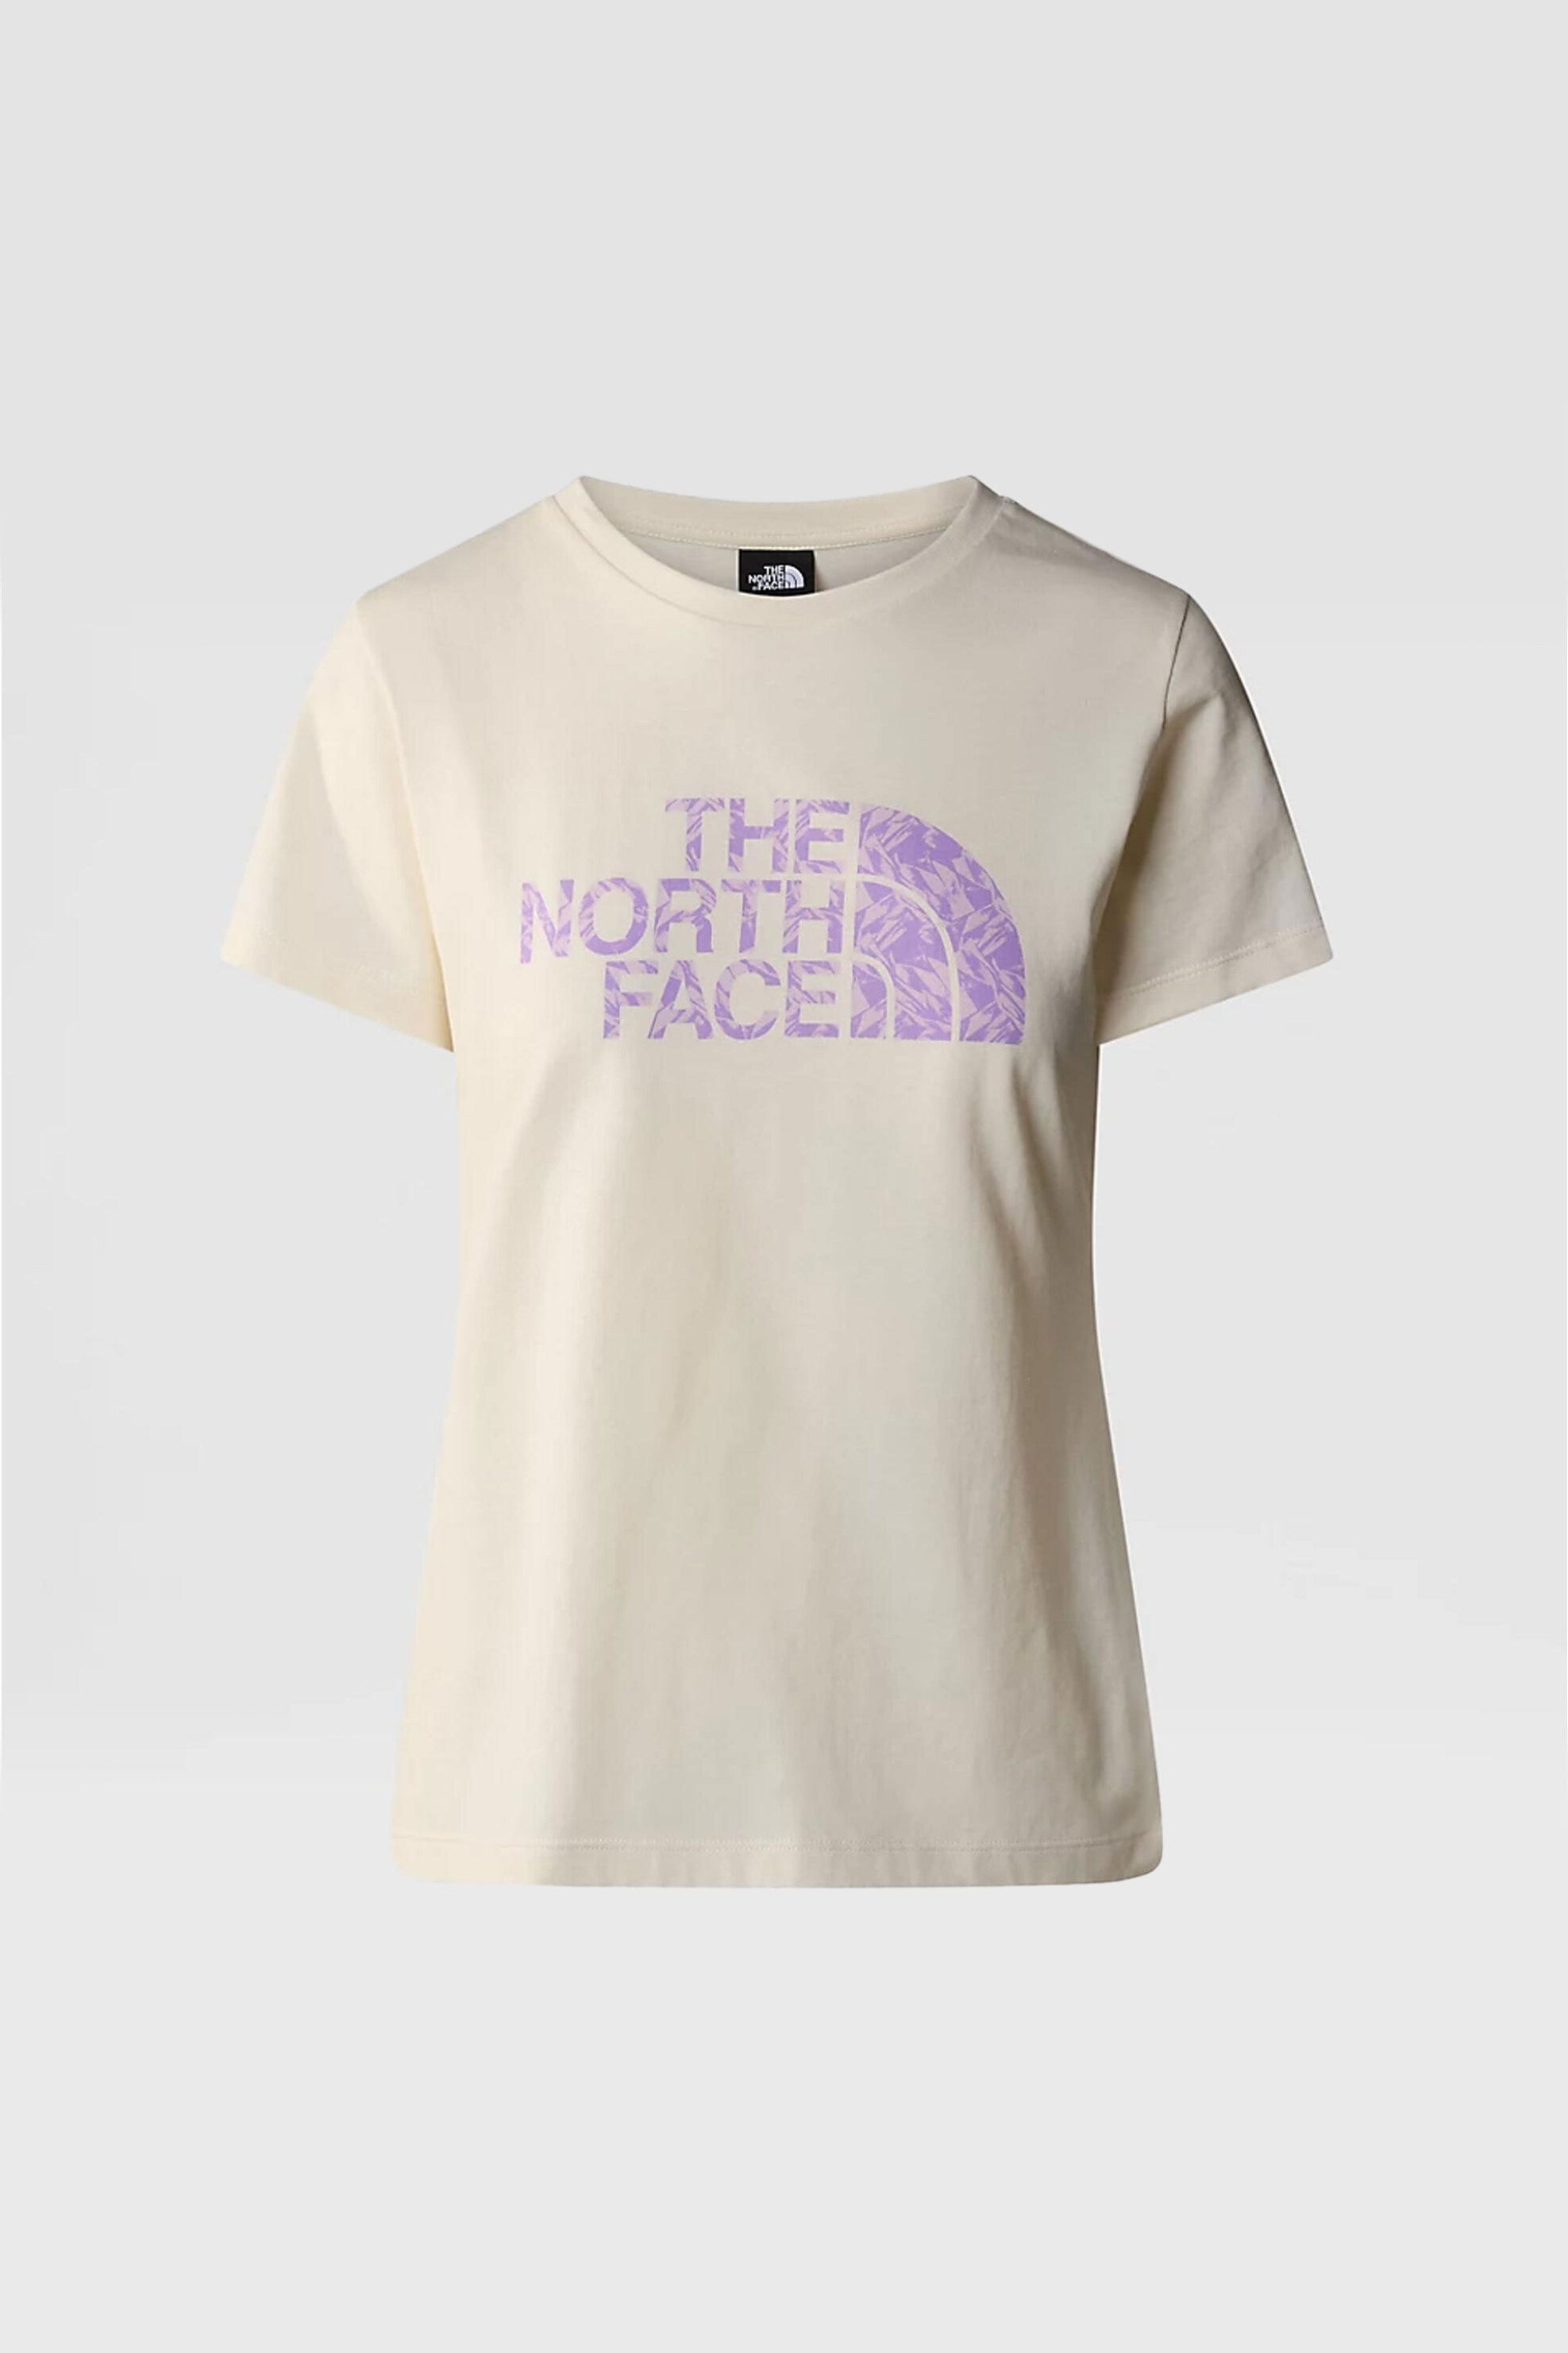 Γυναικεία Ρούχα & Αξεσουάρ > Γυναικεία Ρούχα > Γυναικεία Τοπ > Γυναικεία T-Shirts The North Face γυναικείο T-shirt μονόχρωμο βαμβακερό με logo prints "Easy" - NF0A87N6YFO1 Εκρού